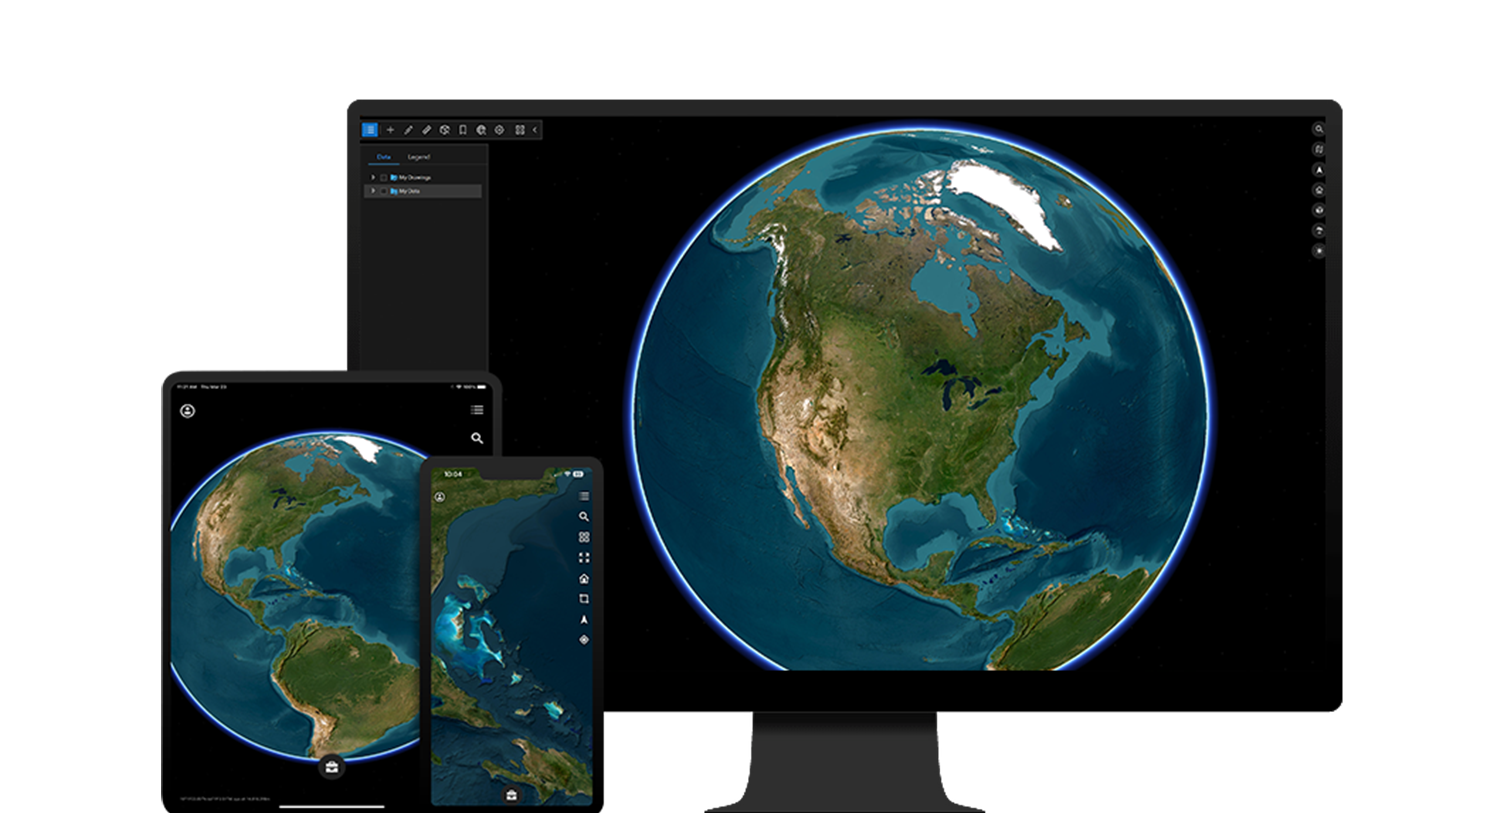 宇宙からの地球の画像を表示しているデスクトップ、タブレット、モバイル デバイス。ArcGIS Earth ユーザー インターフェイスを表現している 